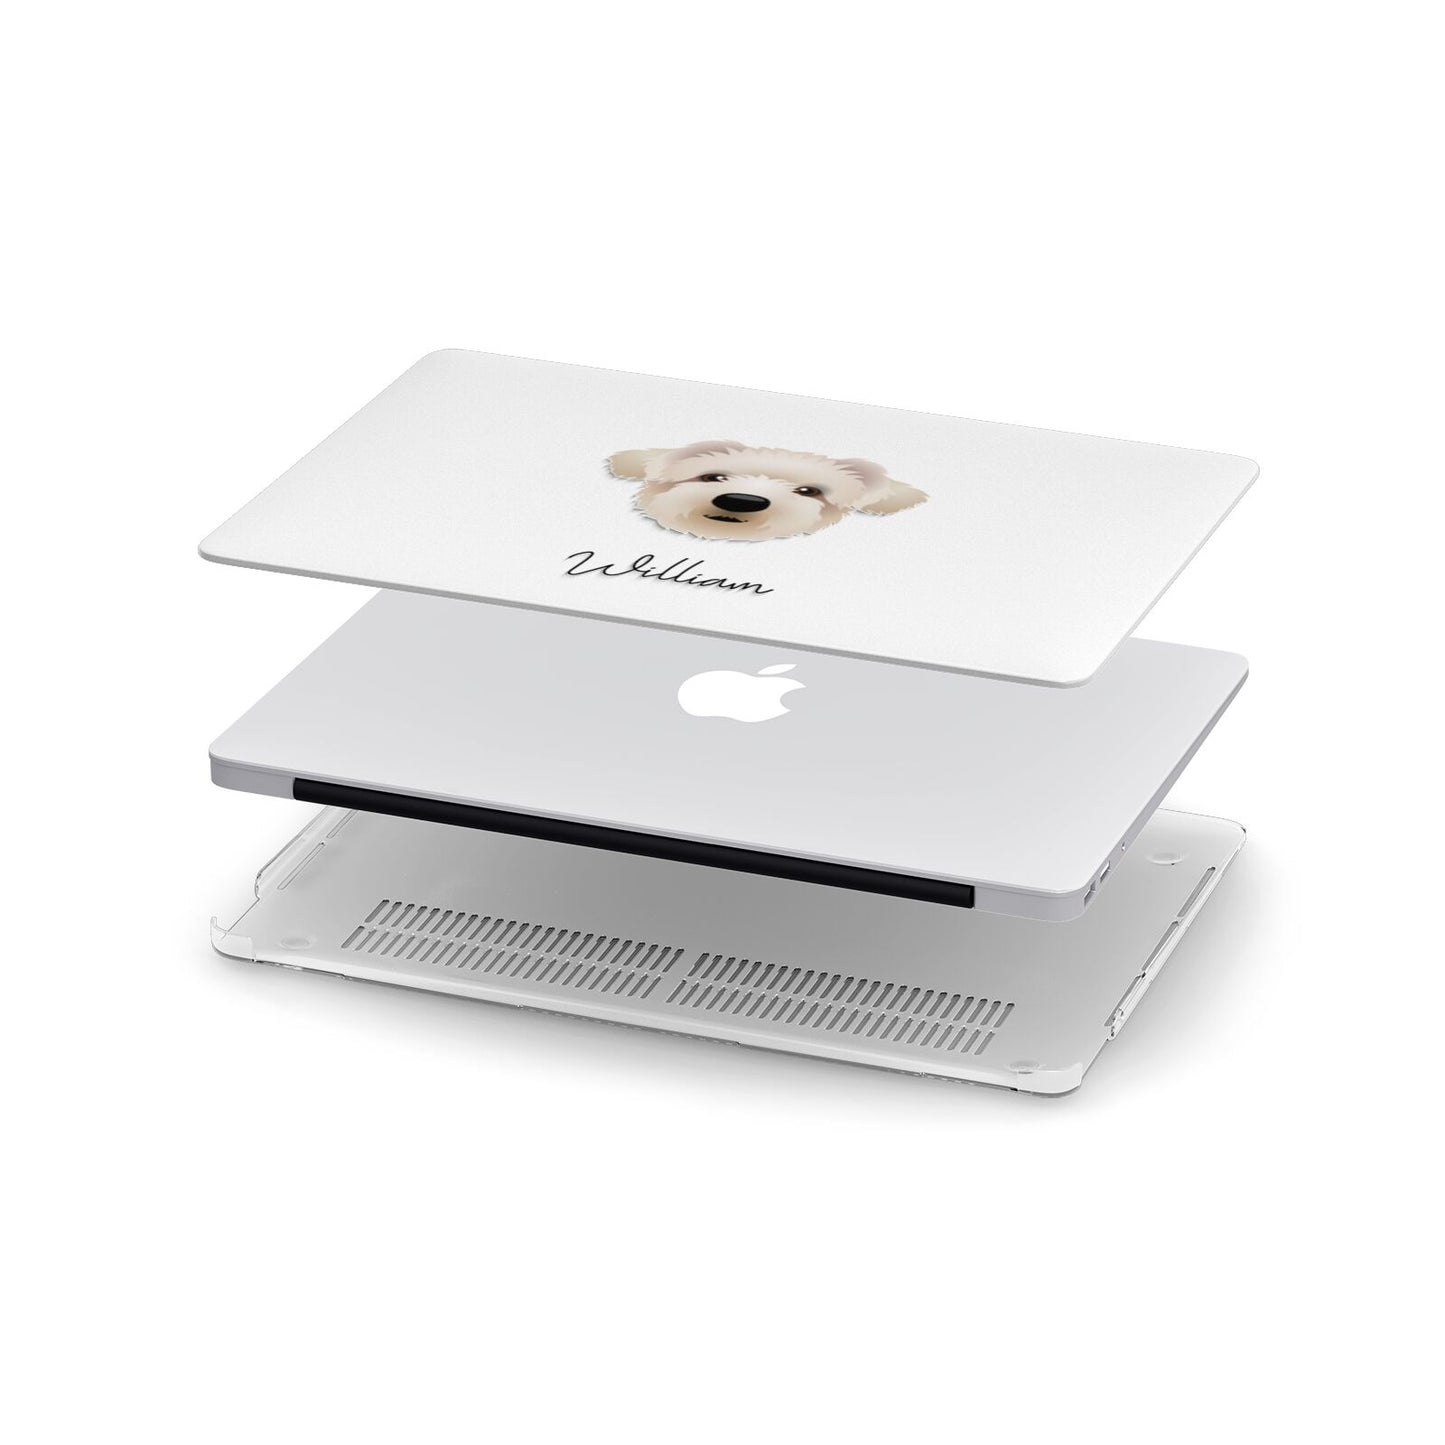 Westiepoo Personalised Apple MacBook Case in Detail